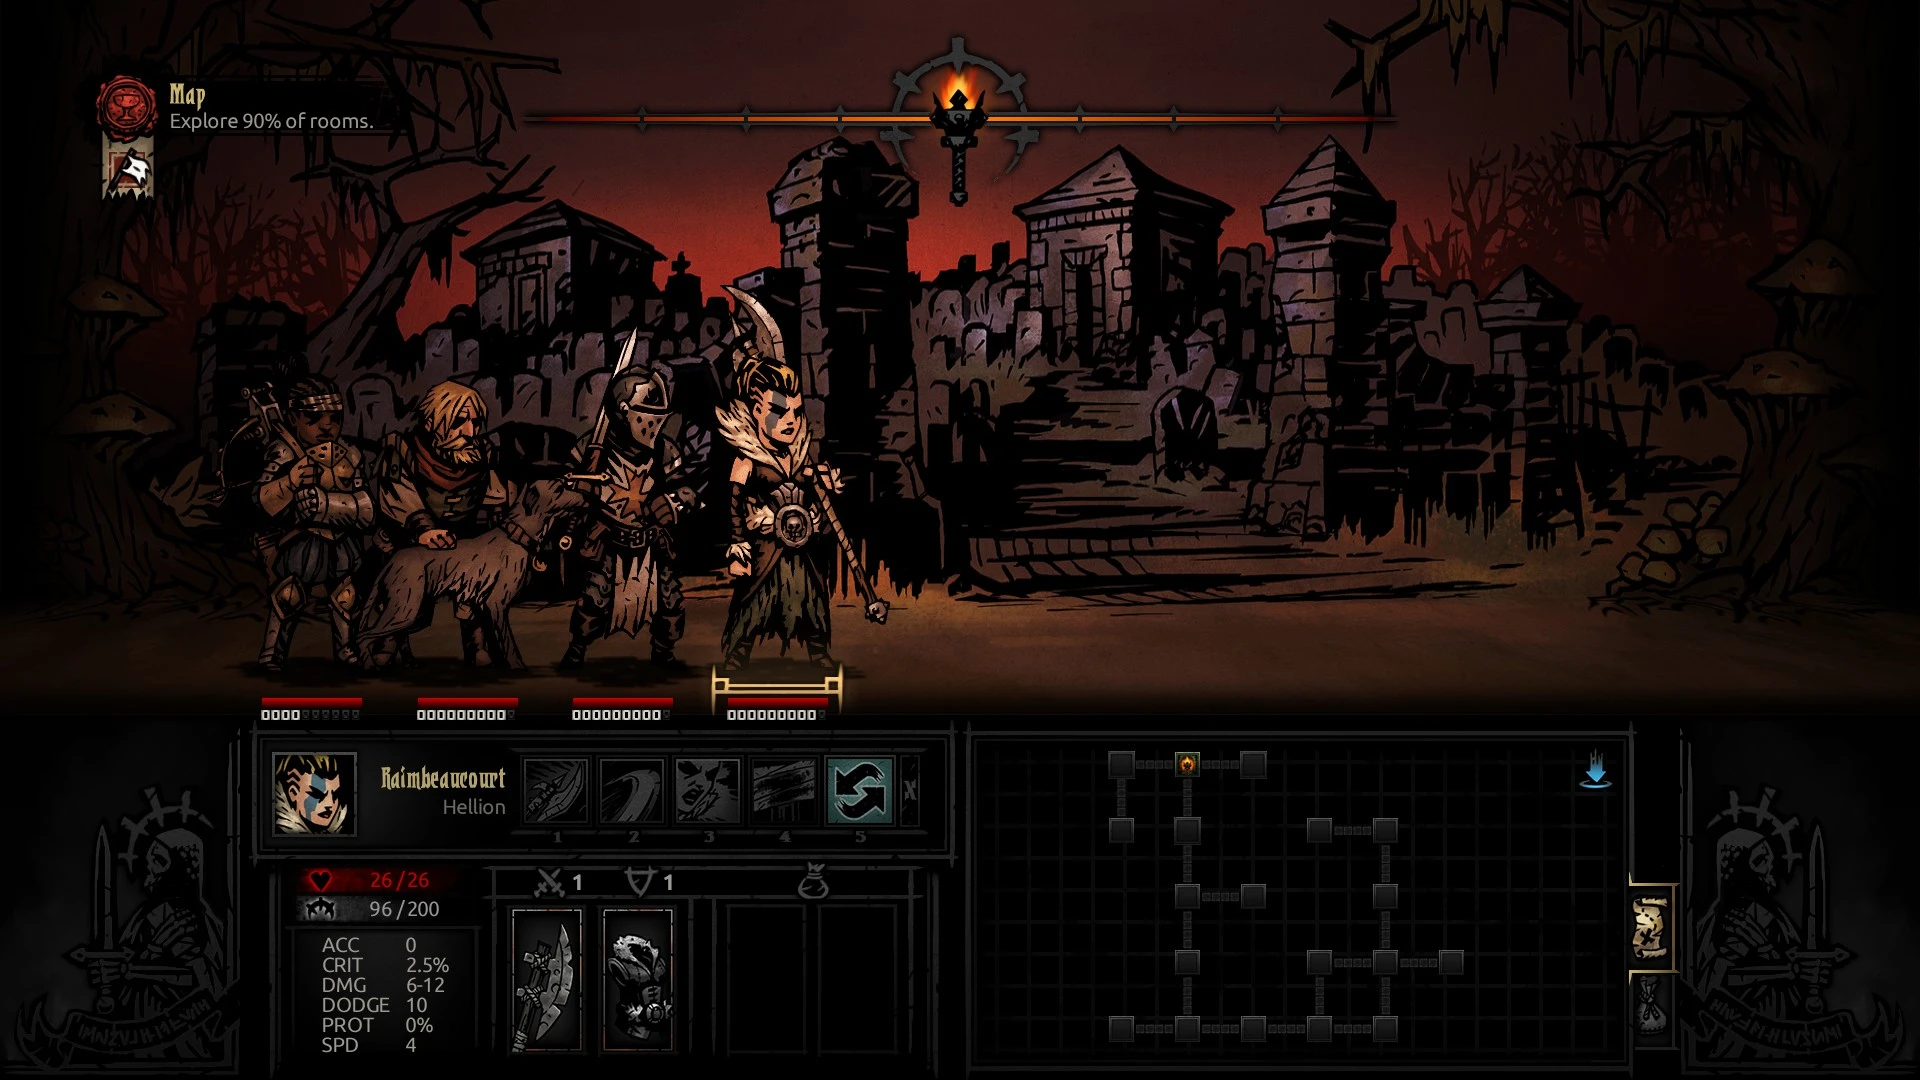 darkest dungeon hellion gameplay